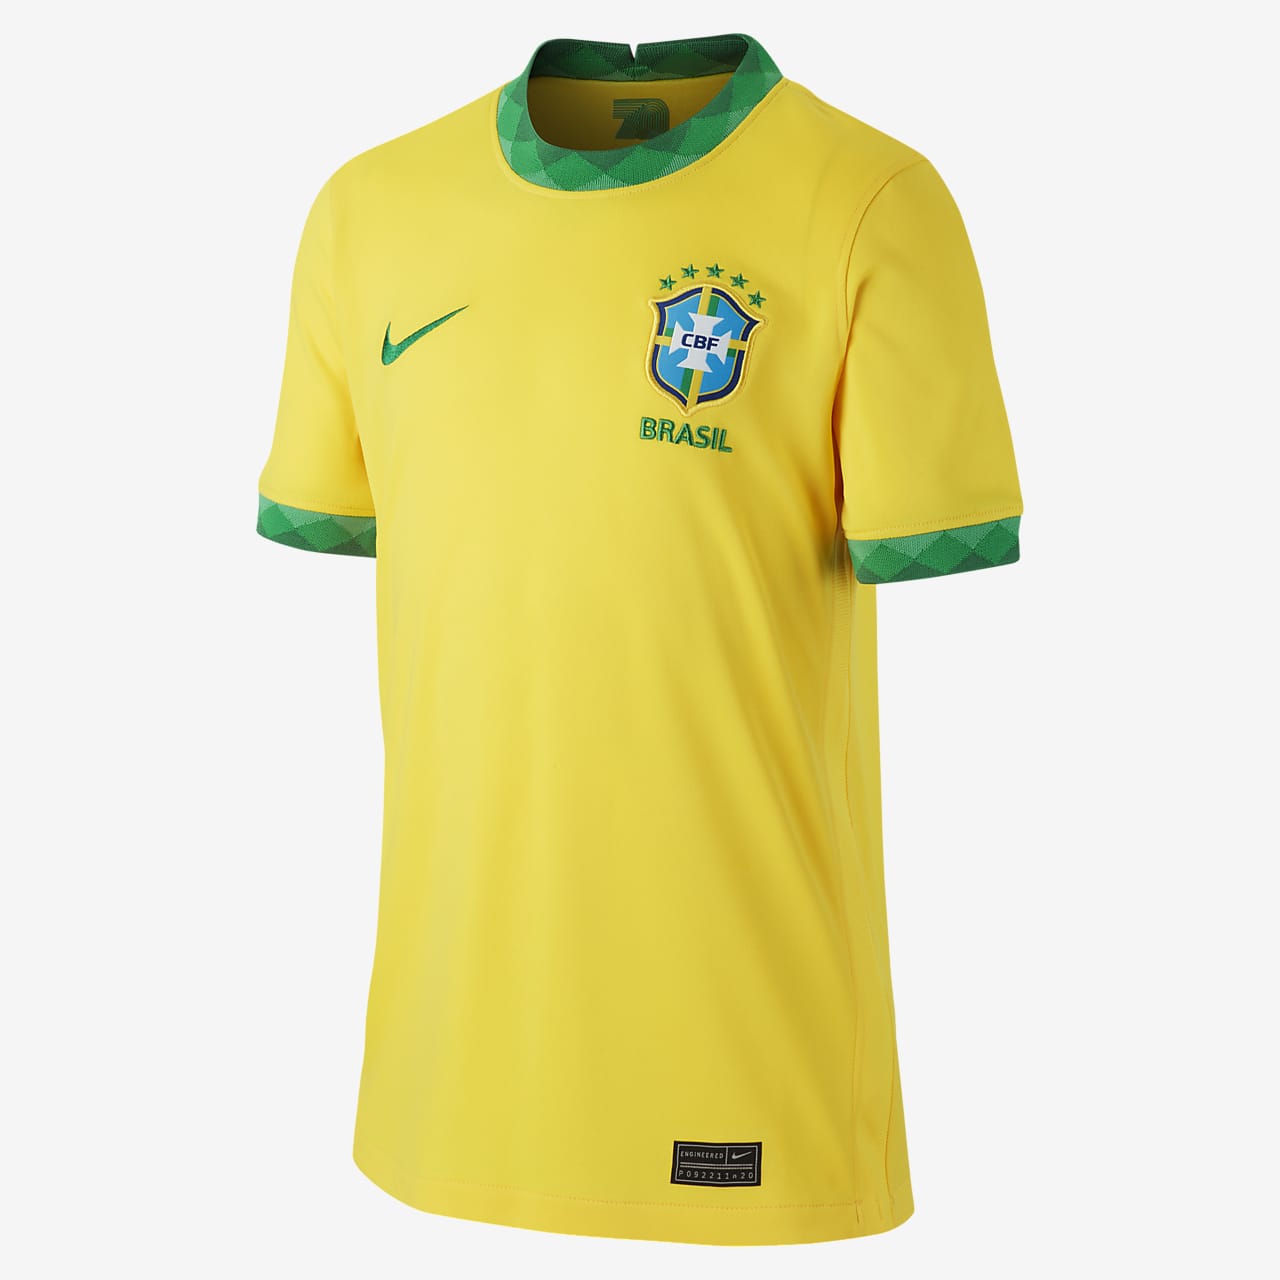 Nike公式 ブラジル スタジアム ホーム ジュニア サッカーユニフォーム オンラインストア 通販サイト